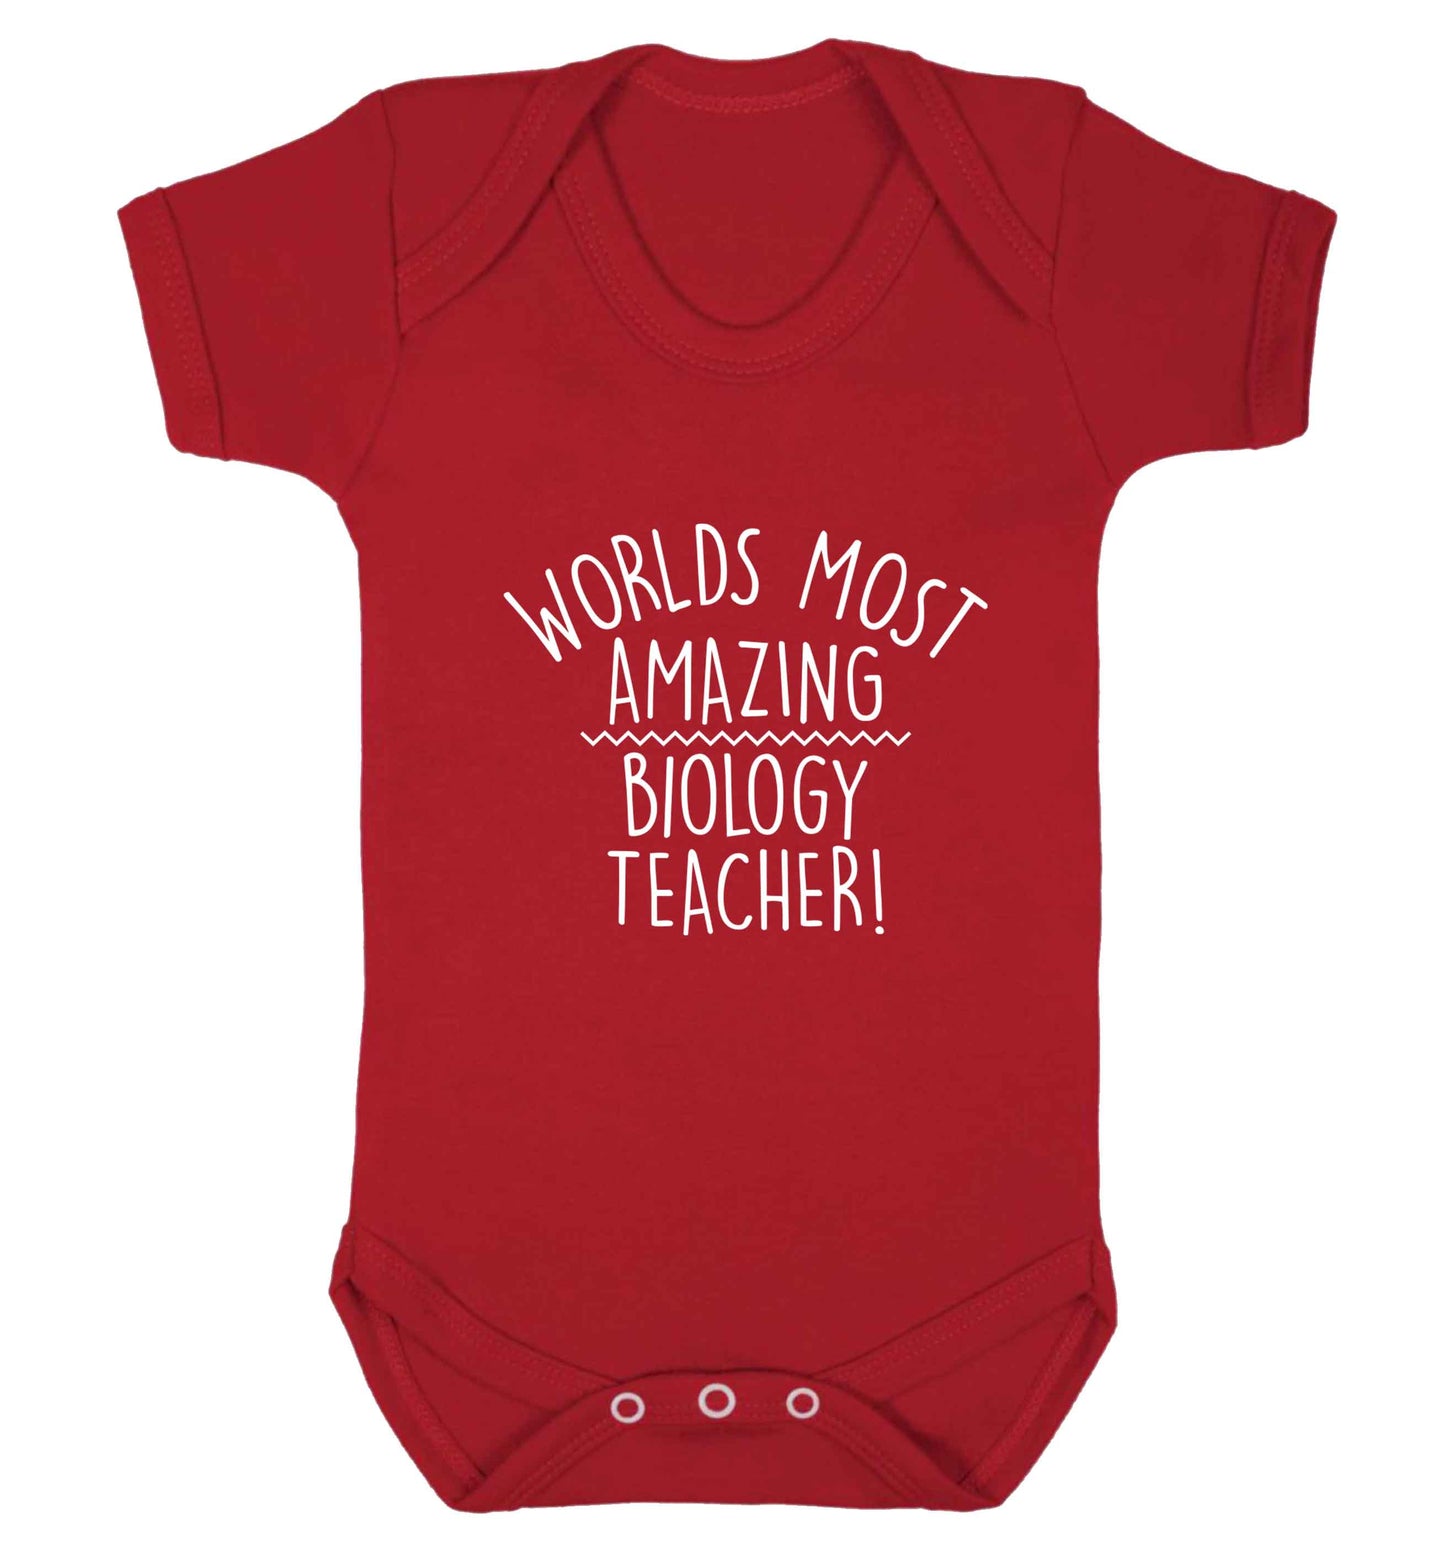 Worlds most amazing biology teacher baby vest red 18-24 months